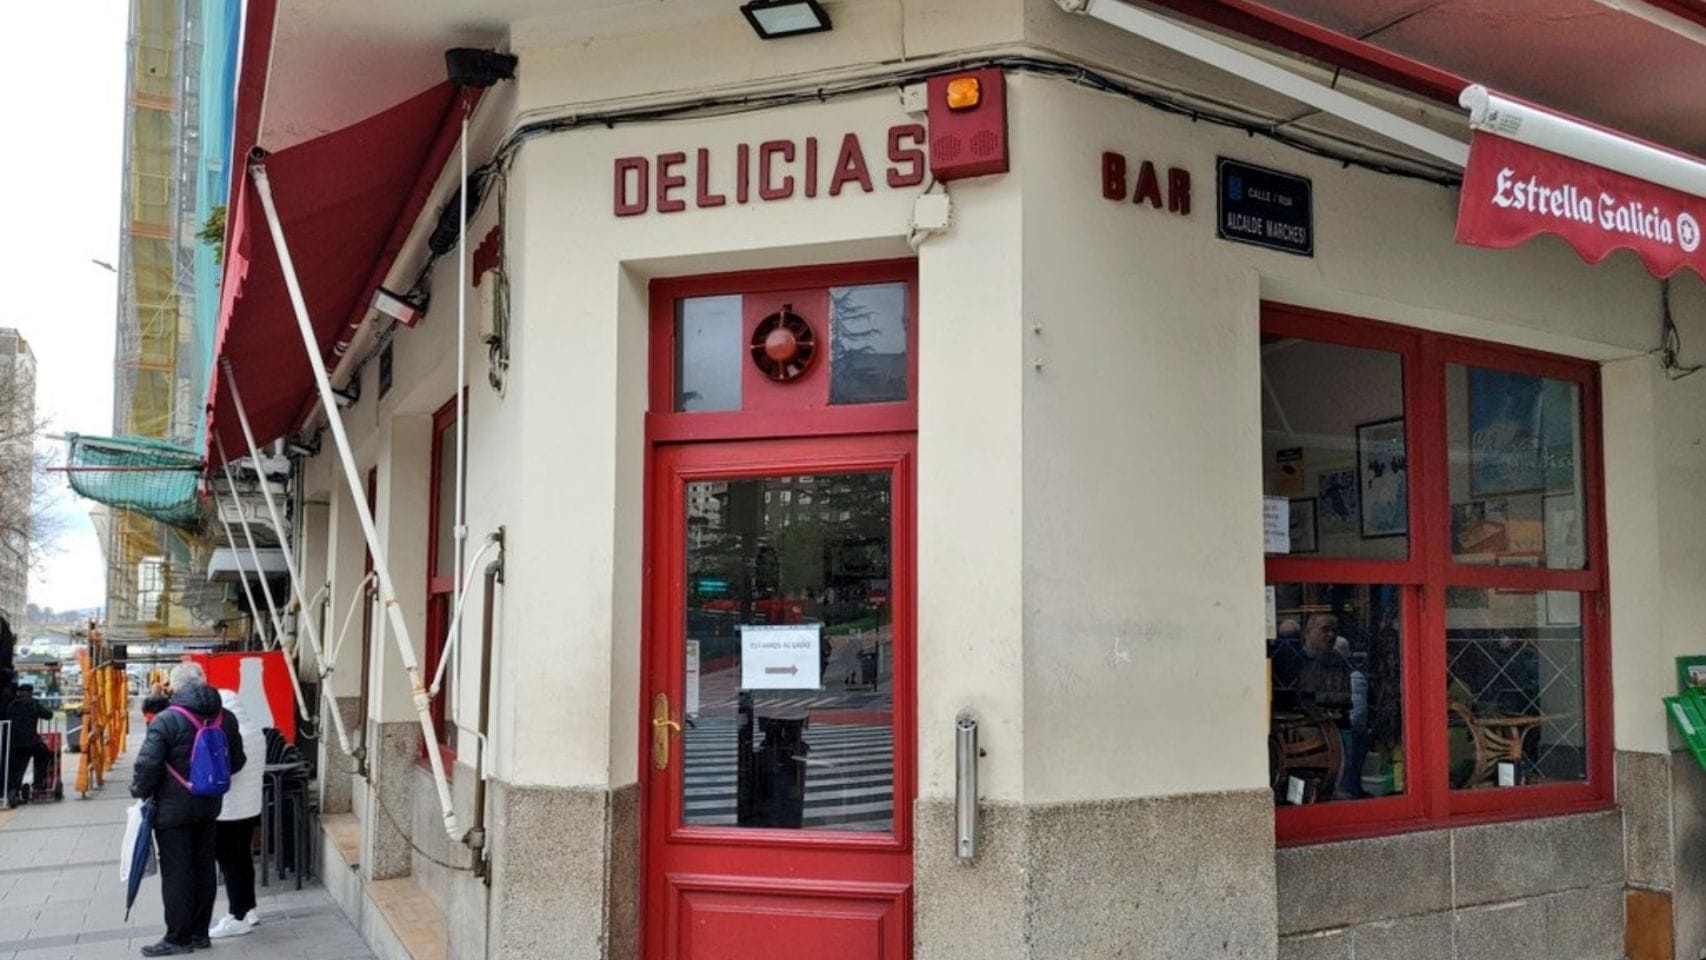 La cafetería Delicias de A Coruña.